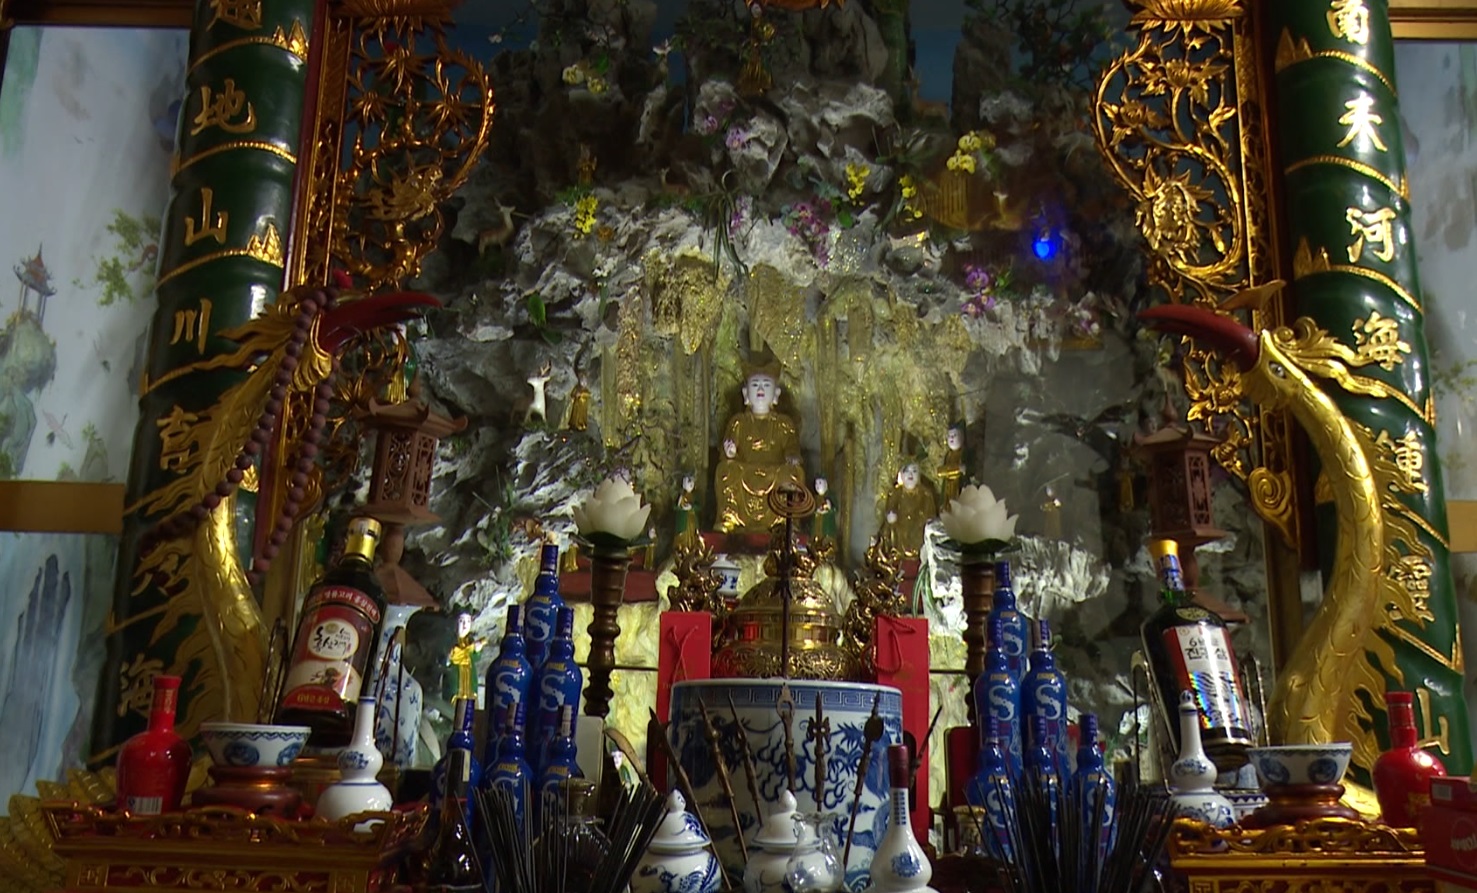 KHÔNG GIAN VĂN HÓA: Tín ngưỡng thờ Mẫu - đặc sắc nét văn hóa Việt